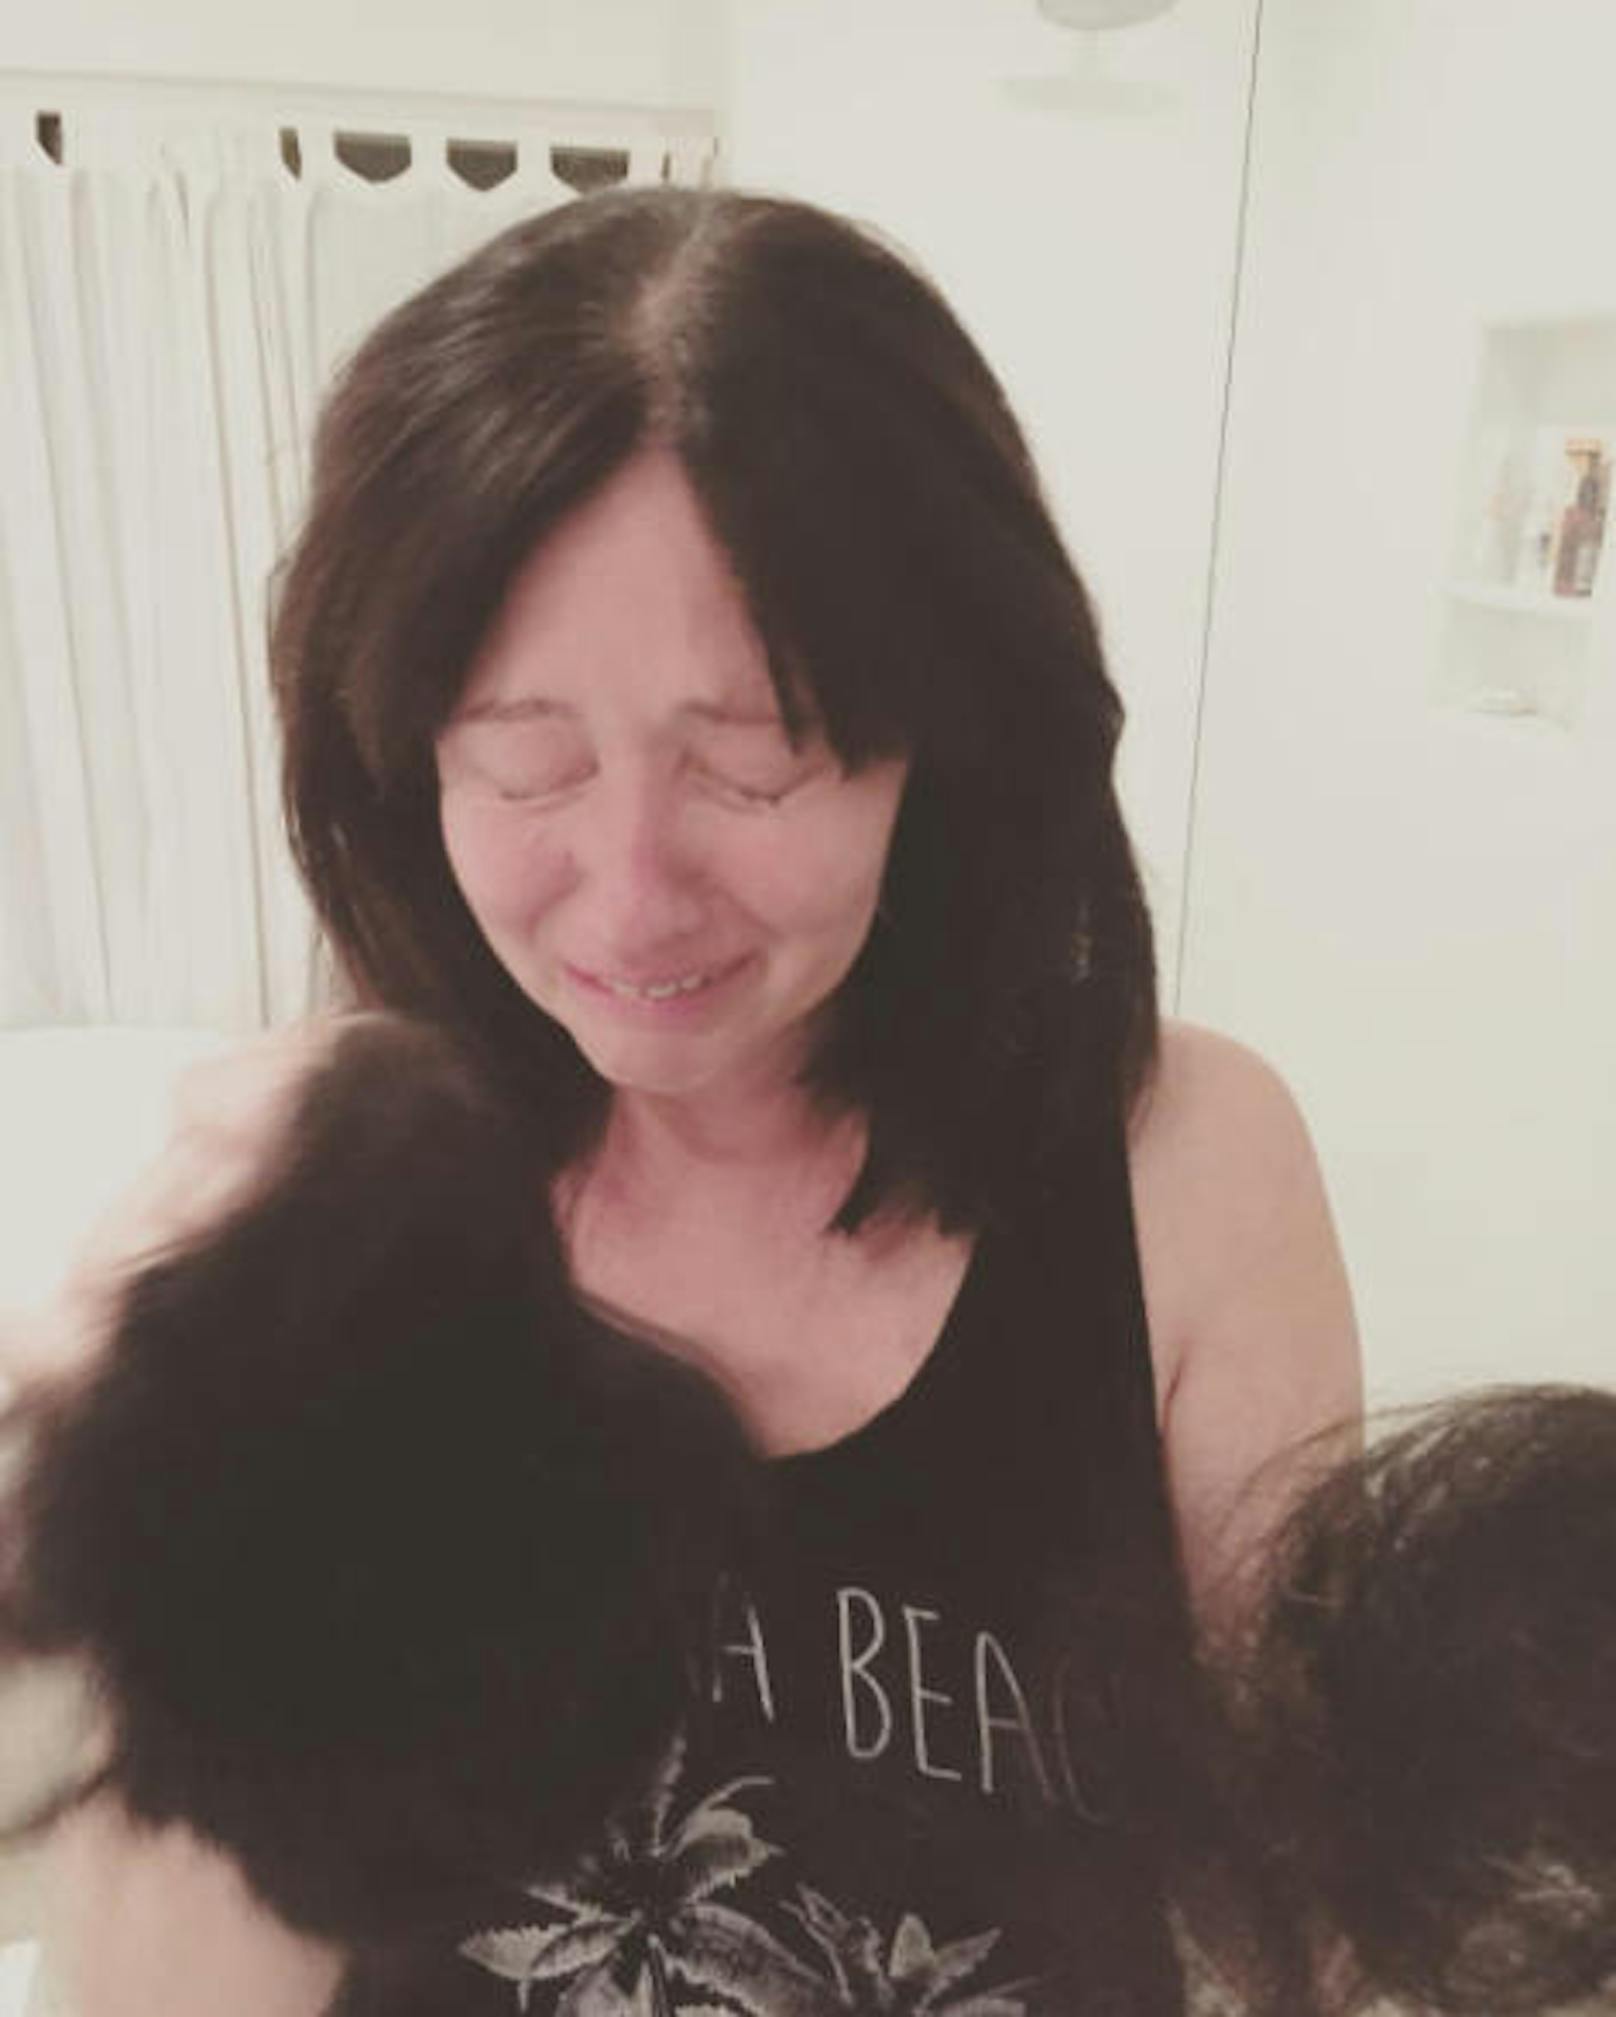 14.10.2017: Im Rahmen des "Breast Cancer Awareness"-Monats teilte Shannon Doherty ein Bild, das ihr persönlich sehr wichtig ist, auf Instagram. Trotz aller Vorkehrungen verlor sie bei ihrer Chemotherapie ihre Haare.